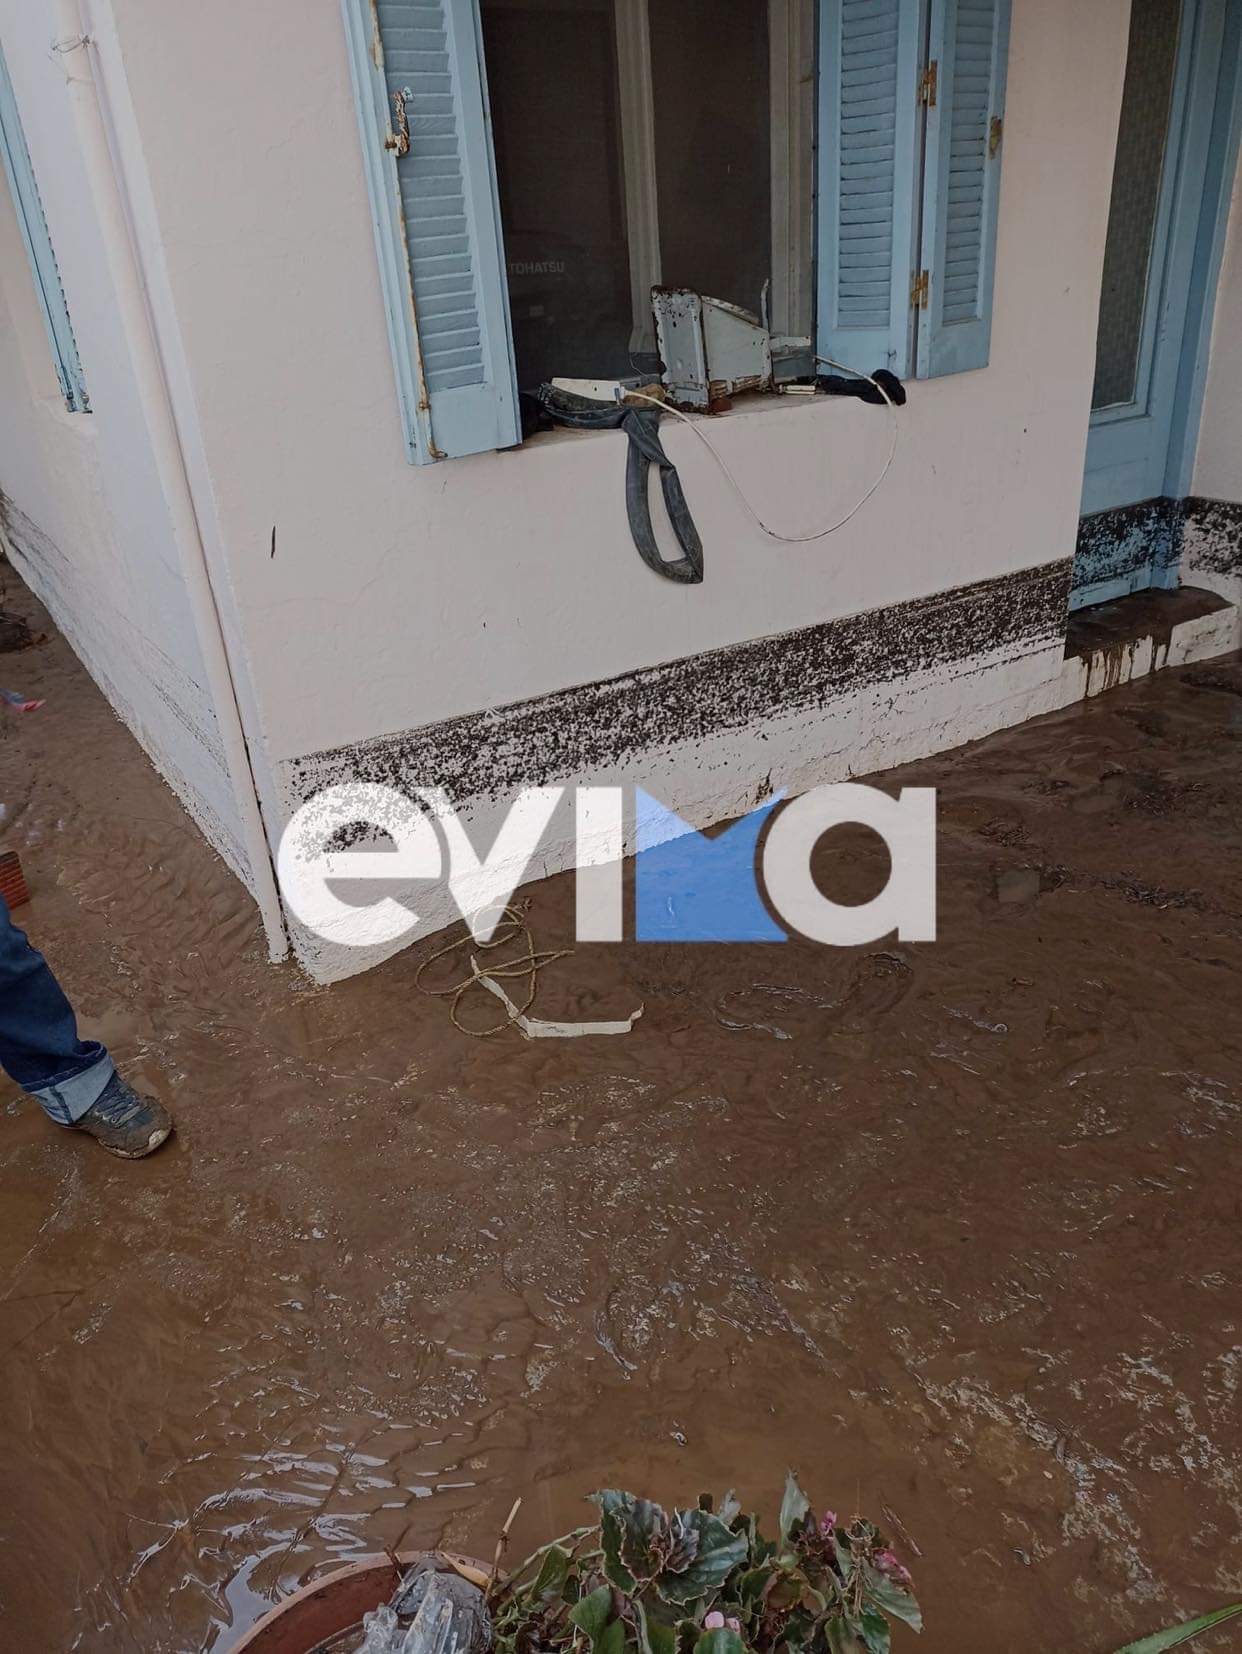 Κακοκαιρία: Η Βόρεια Εύβοια μετρά τις πληγές της – Πλημμυρισμένα πάνω από 200 σπίτια